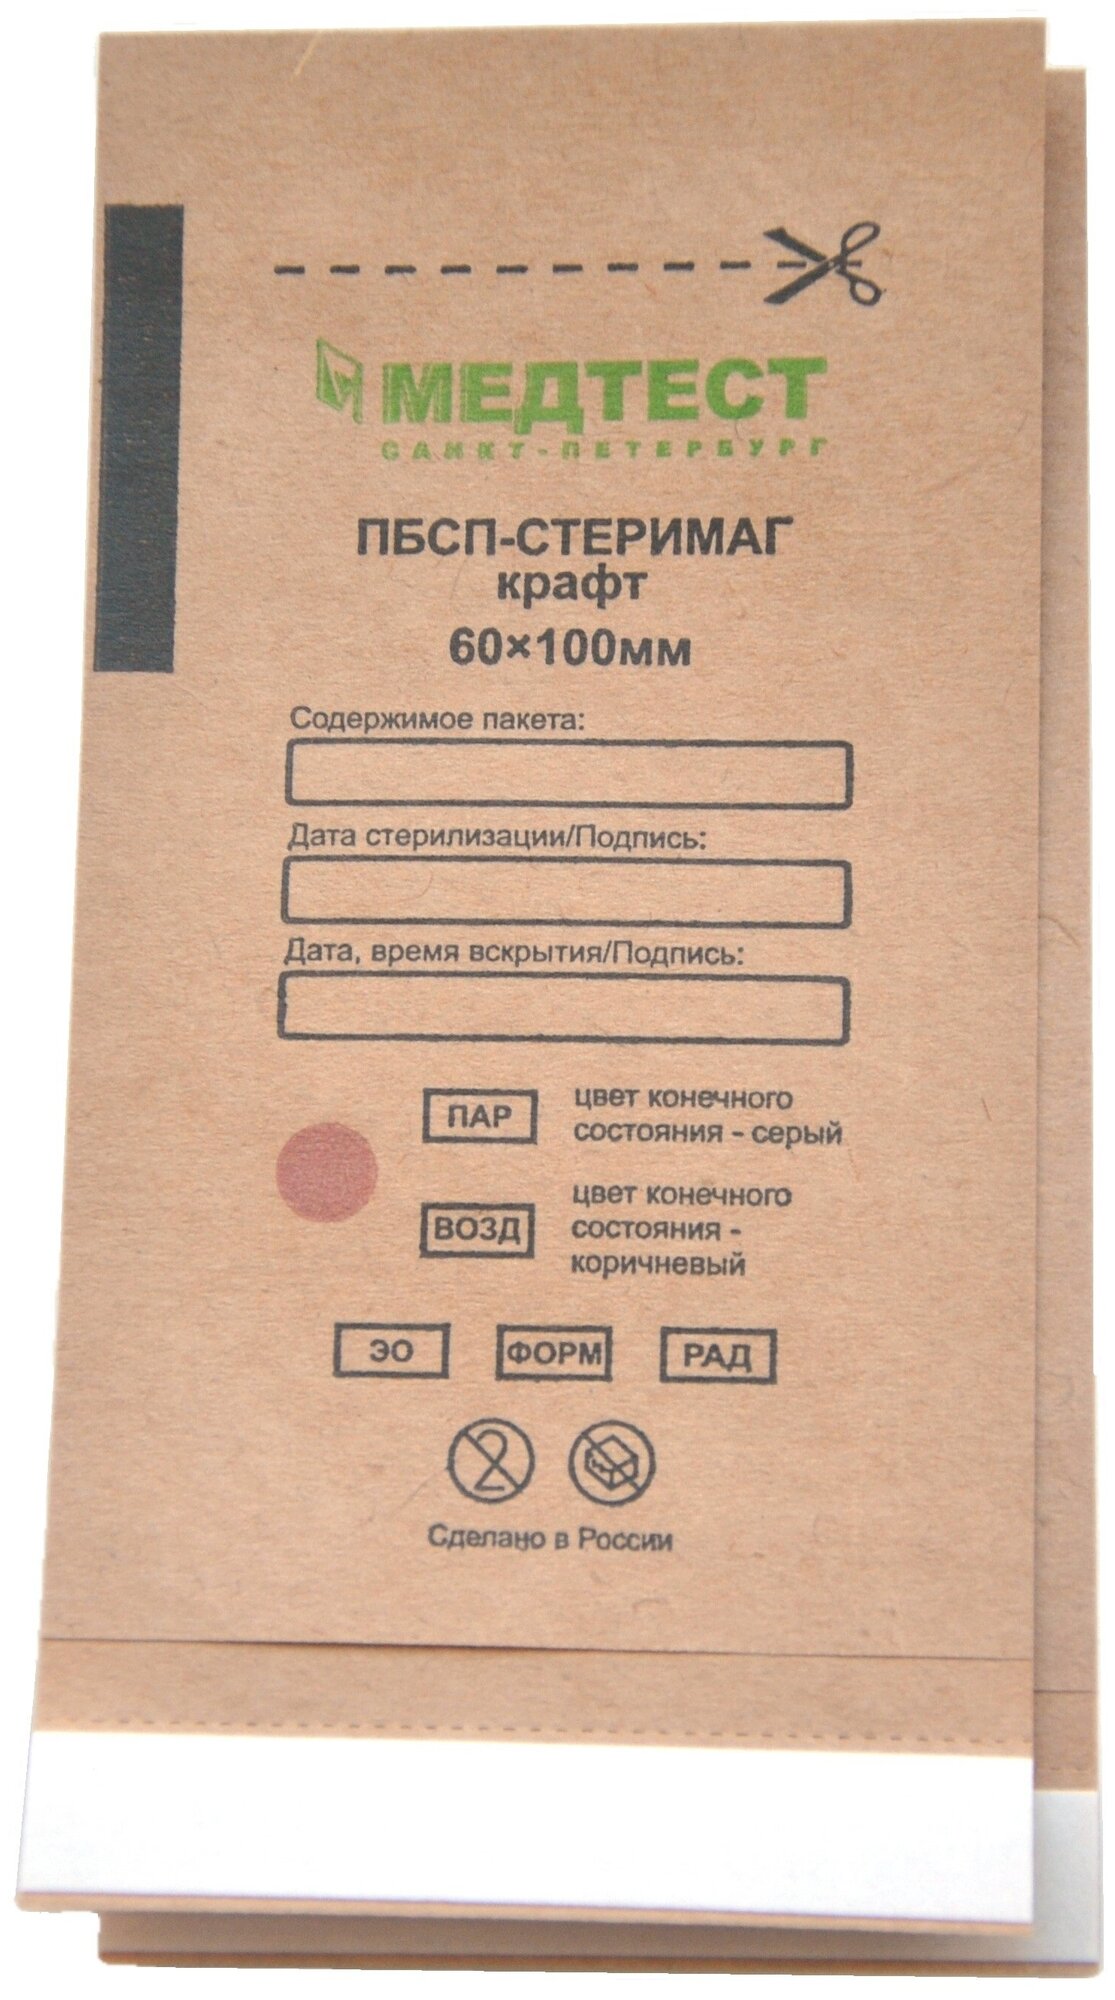 1 шт. Пакеты 60х100 мм для стерилизации Decoromir пбсп-стеримаг (крафт коричневые, 100 шт.)